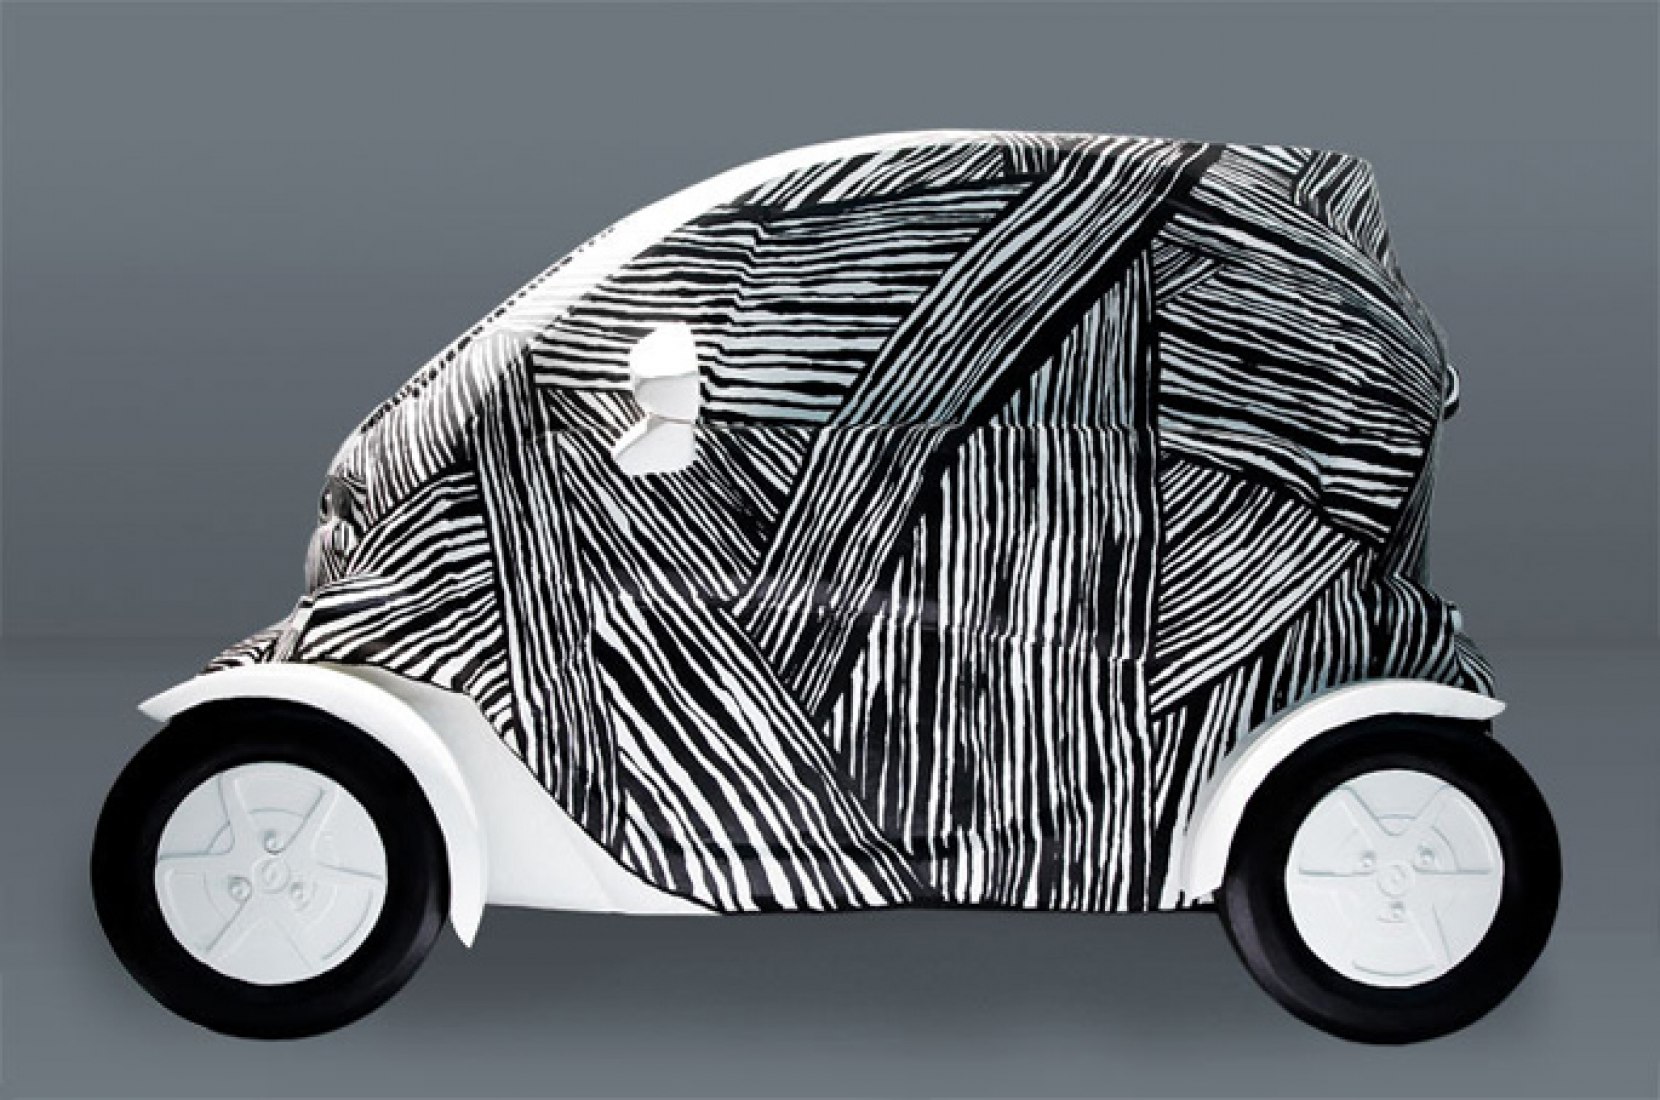 Renault Twizy, un nuevo coche eléctrico para la ciudad. Proyecto que fue exhibido en el Matadero, Madrid. Imagen cortesía de Luis Urculo.